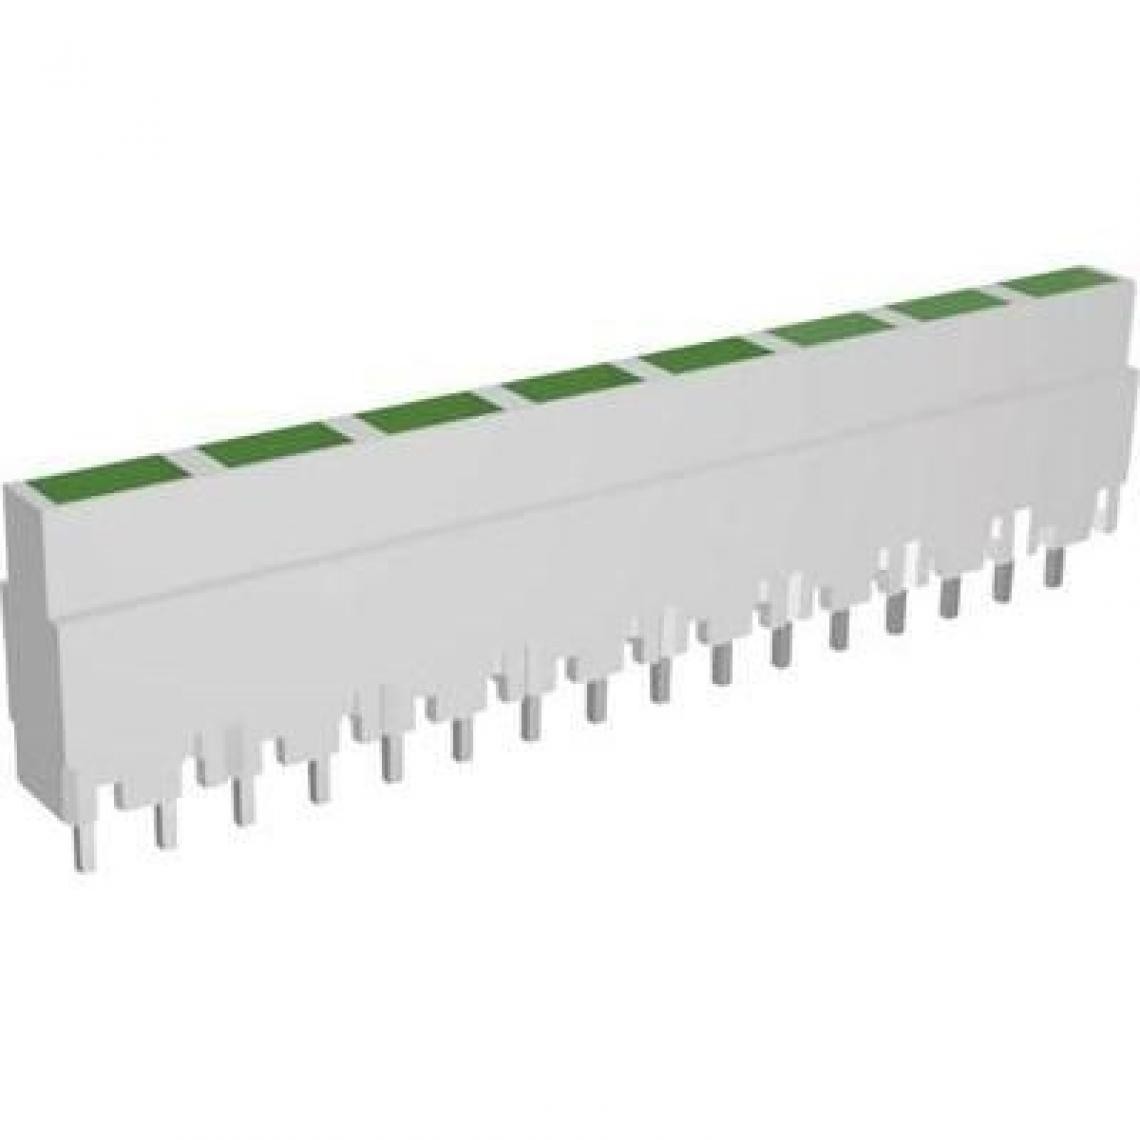 Inconnu - Rangée de LEDs Signal Construct ZALW 082 8 prises vert (L x l x h) 40.8 x 3.7 x 9 mm 1 pc(s) - Fiches électriques